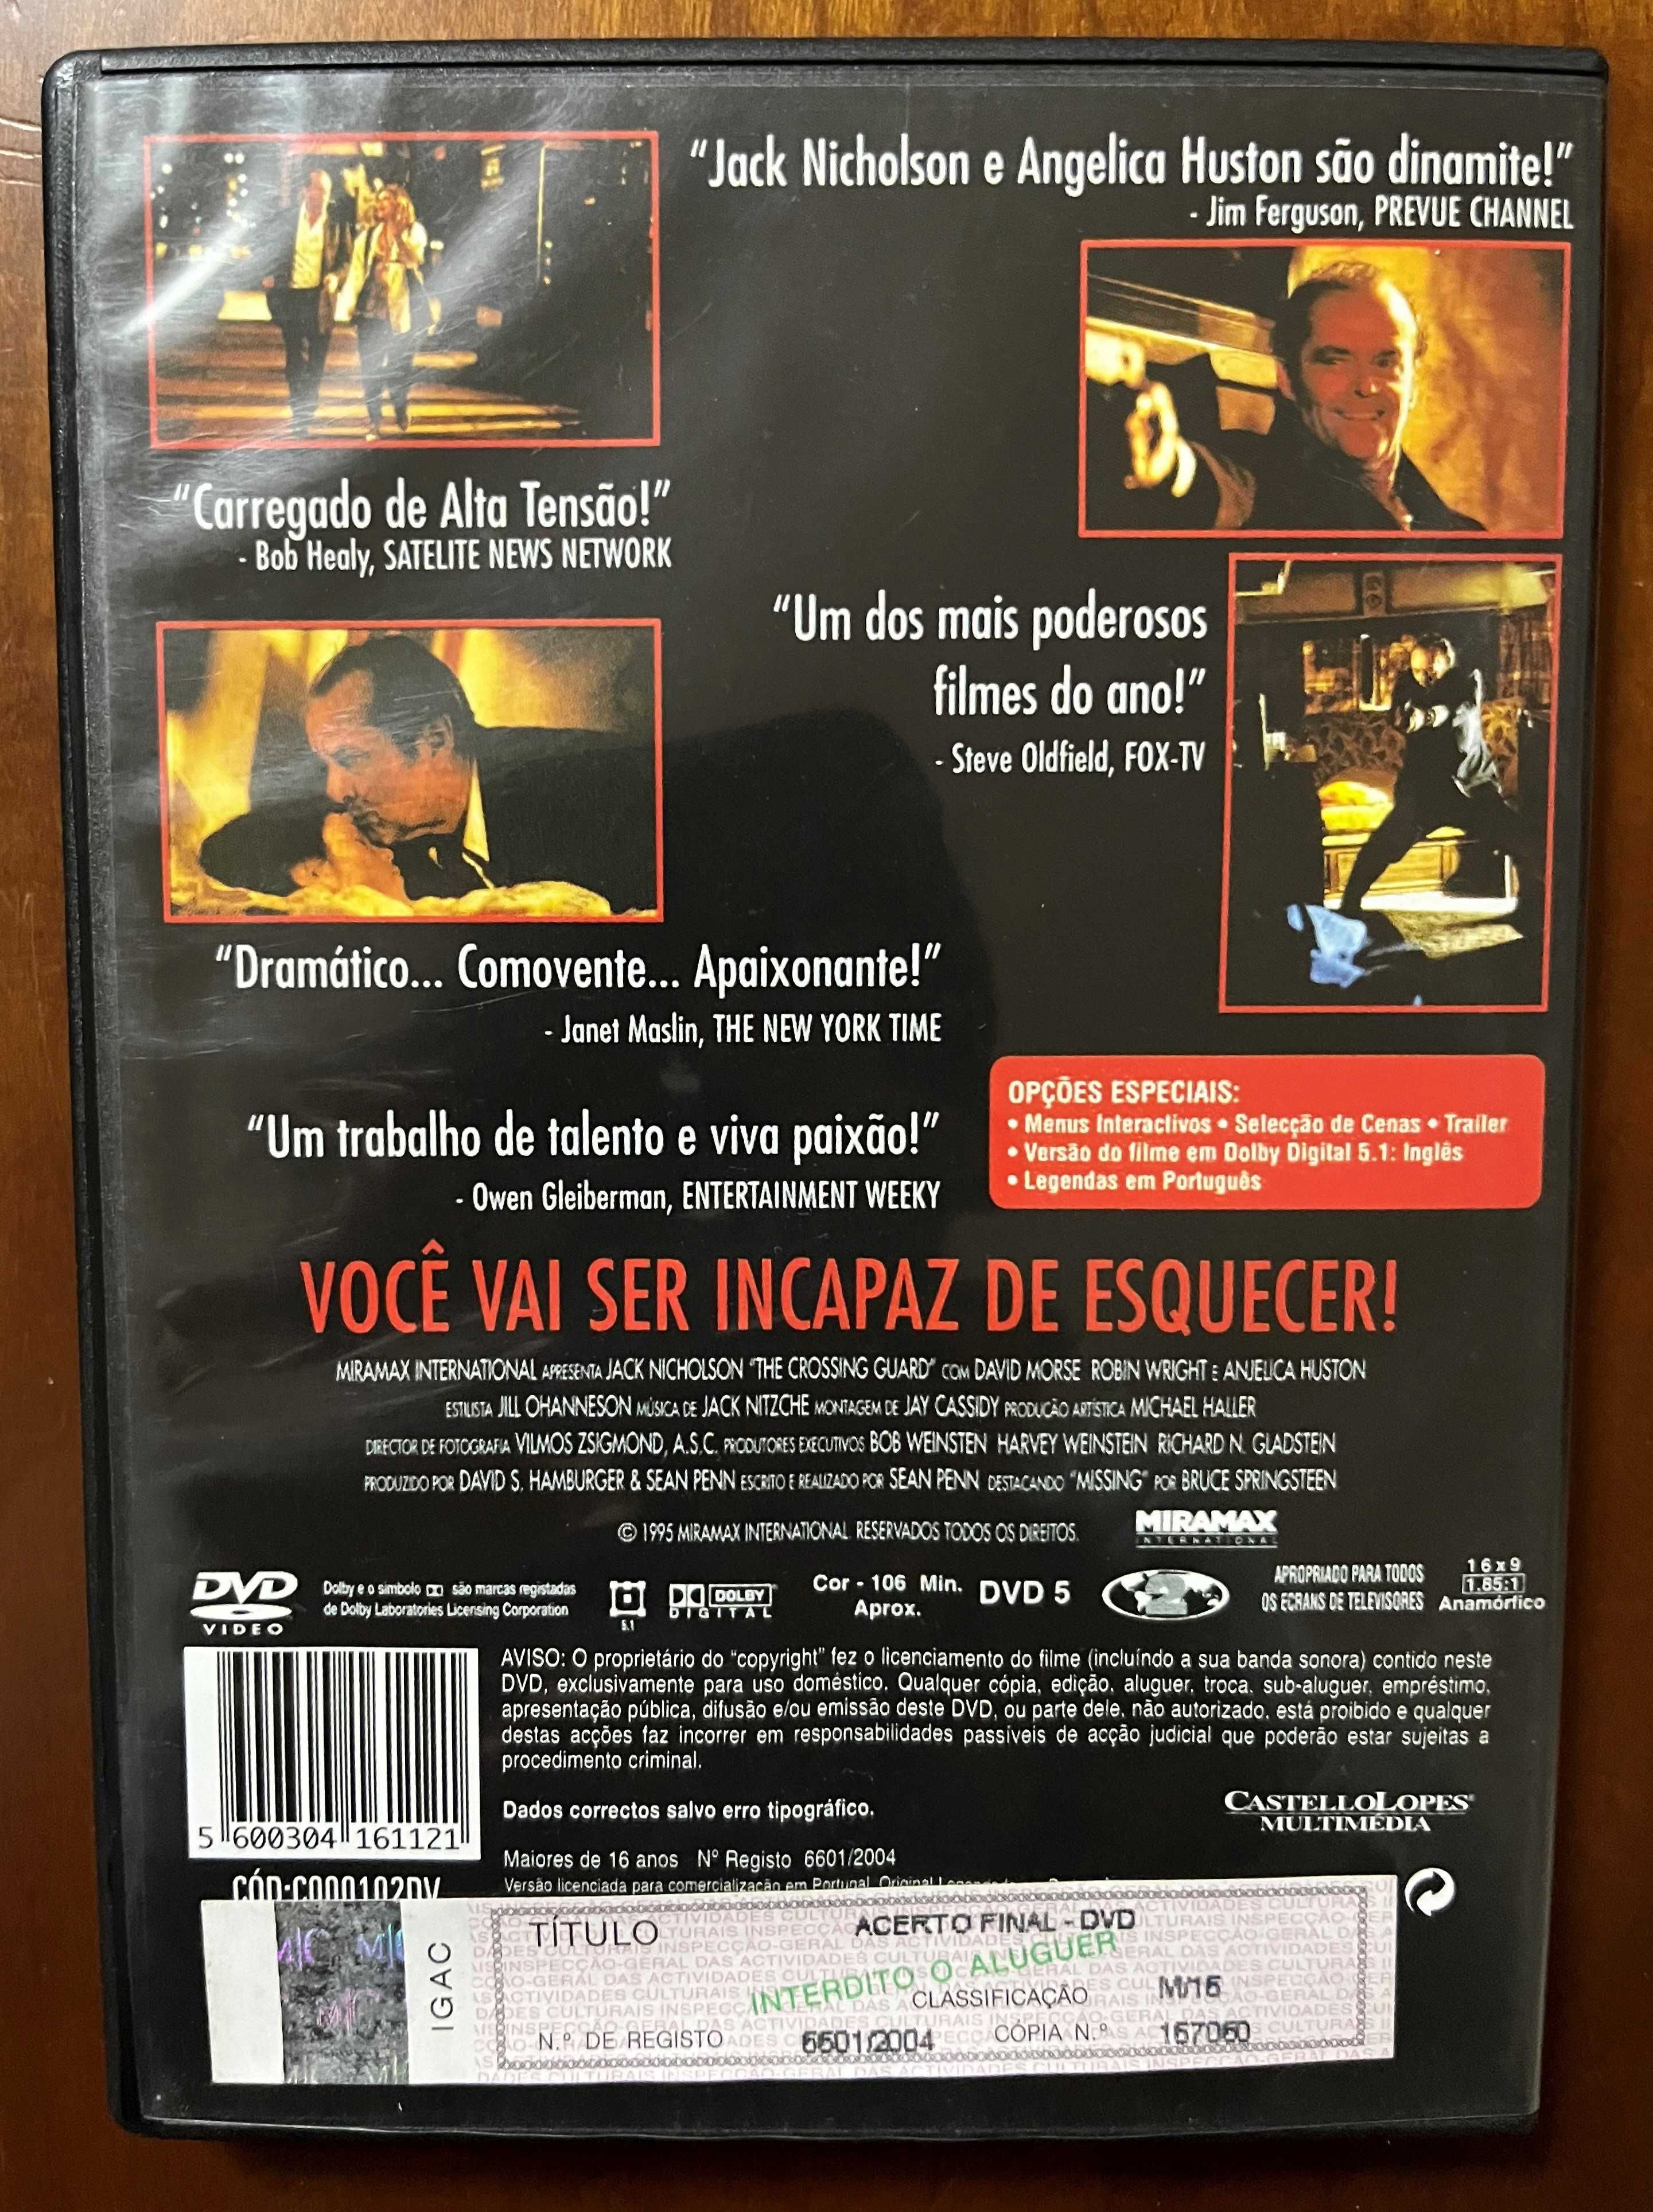 DVD "Acerto Final" de Sean Penn